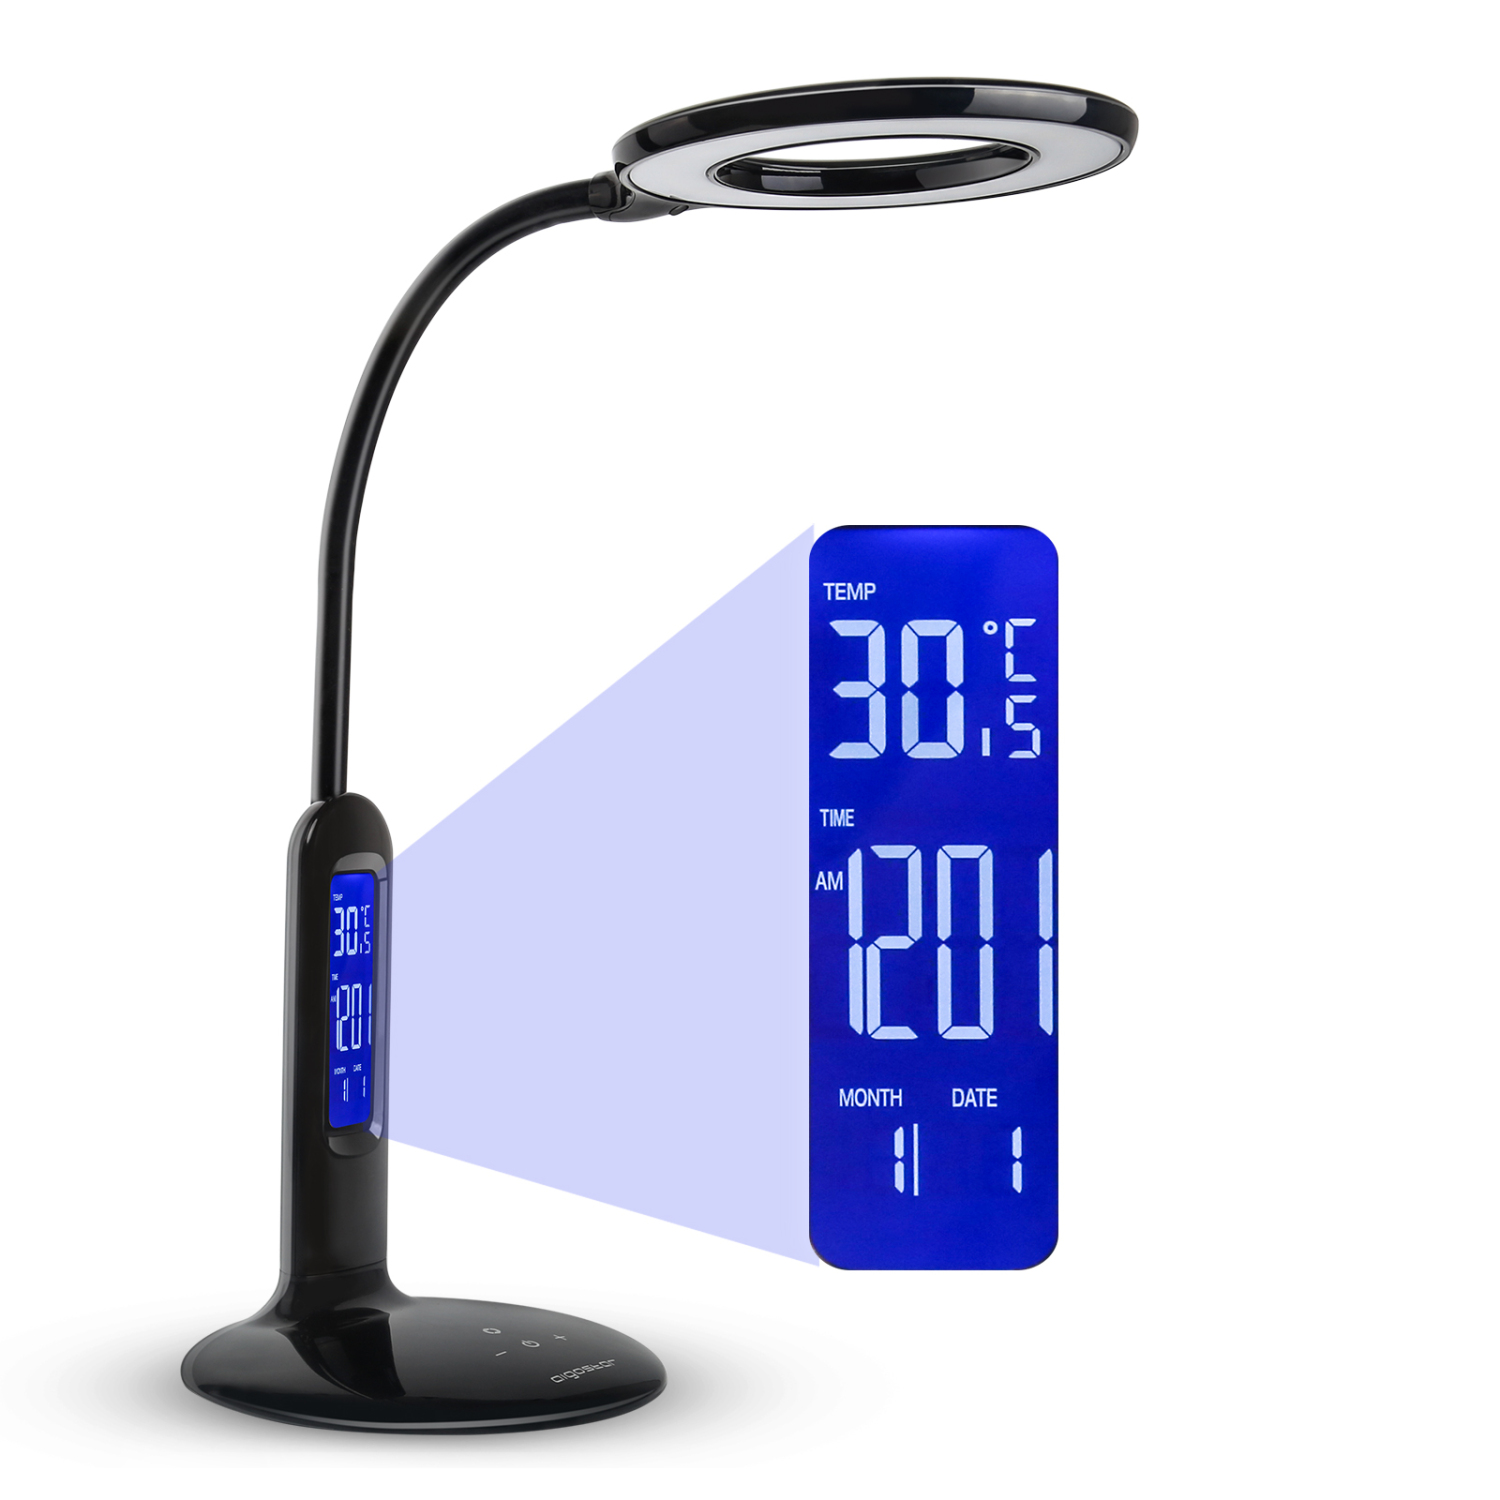 LED Bureaulamp, 7 W, touch-functie, 360 lm LCD-display met kalender, temperatuur, alarm 5 helderheidsniveaus, 2 verlichtingsmodi voor warm en wit licht.